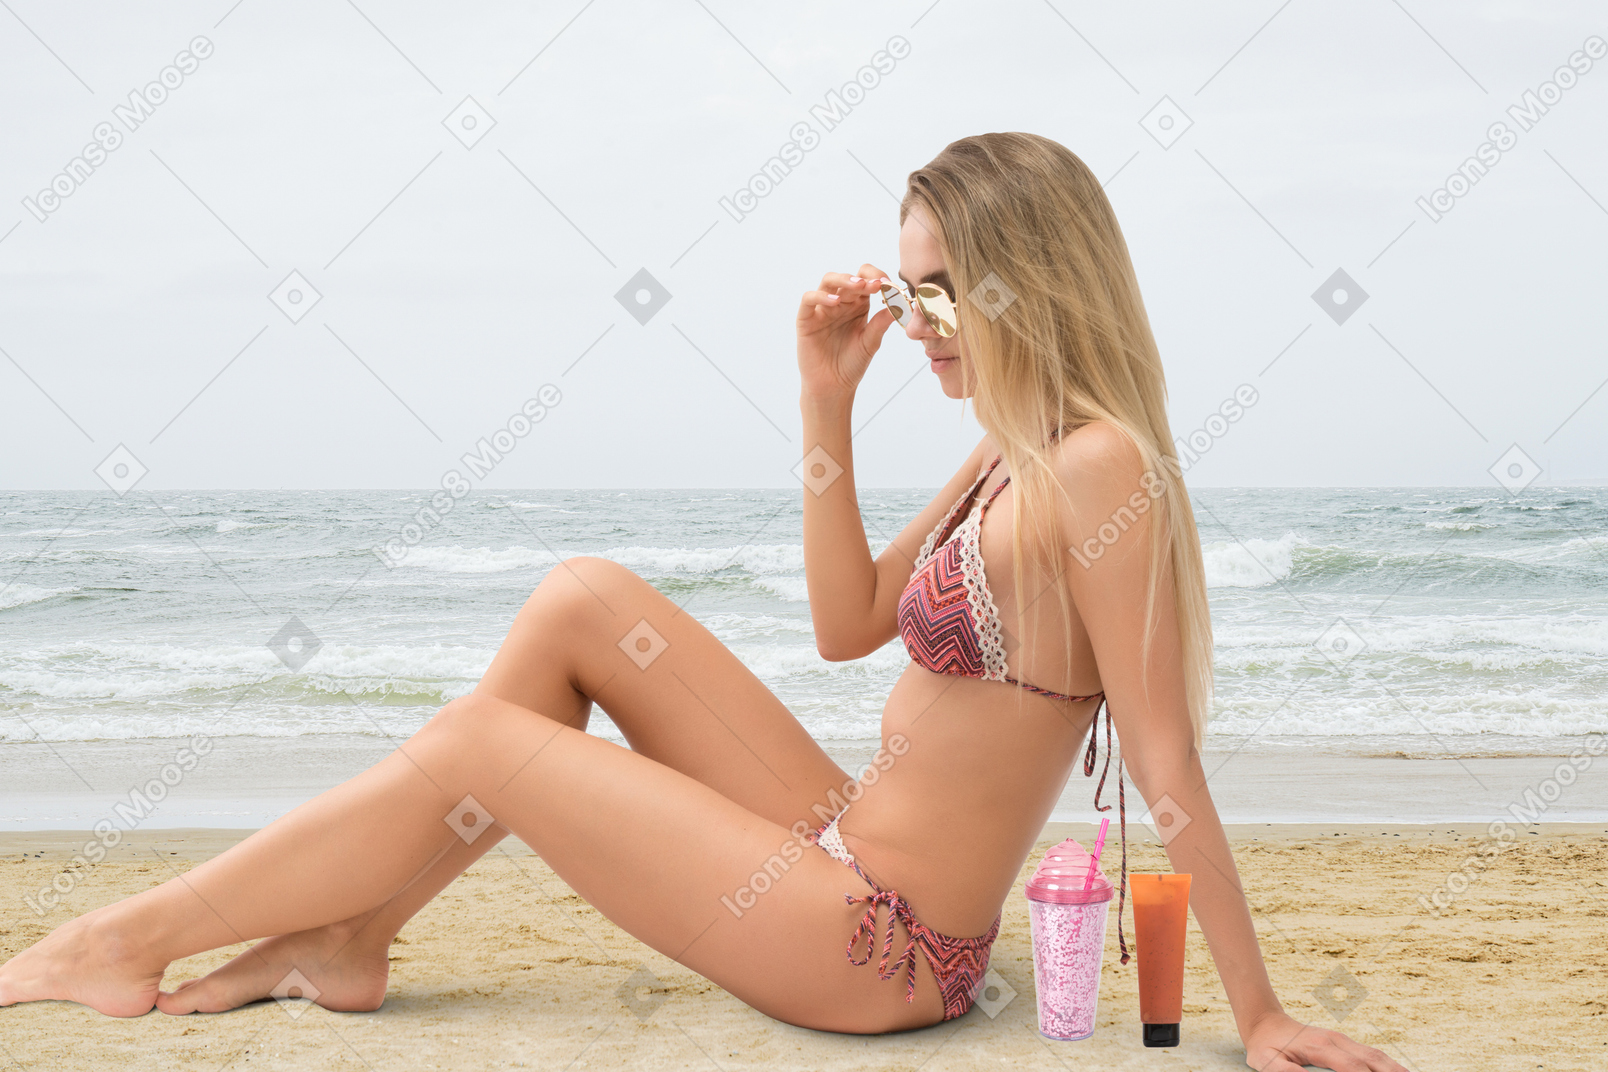 A woman in a bikini sitting on the beach